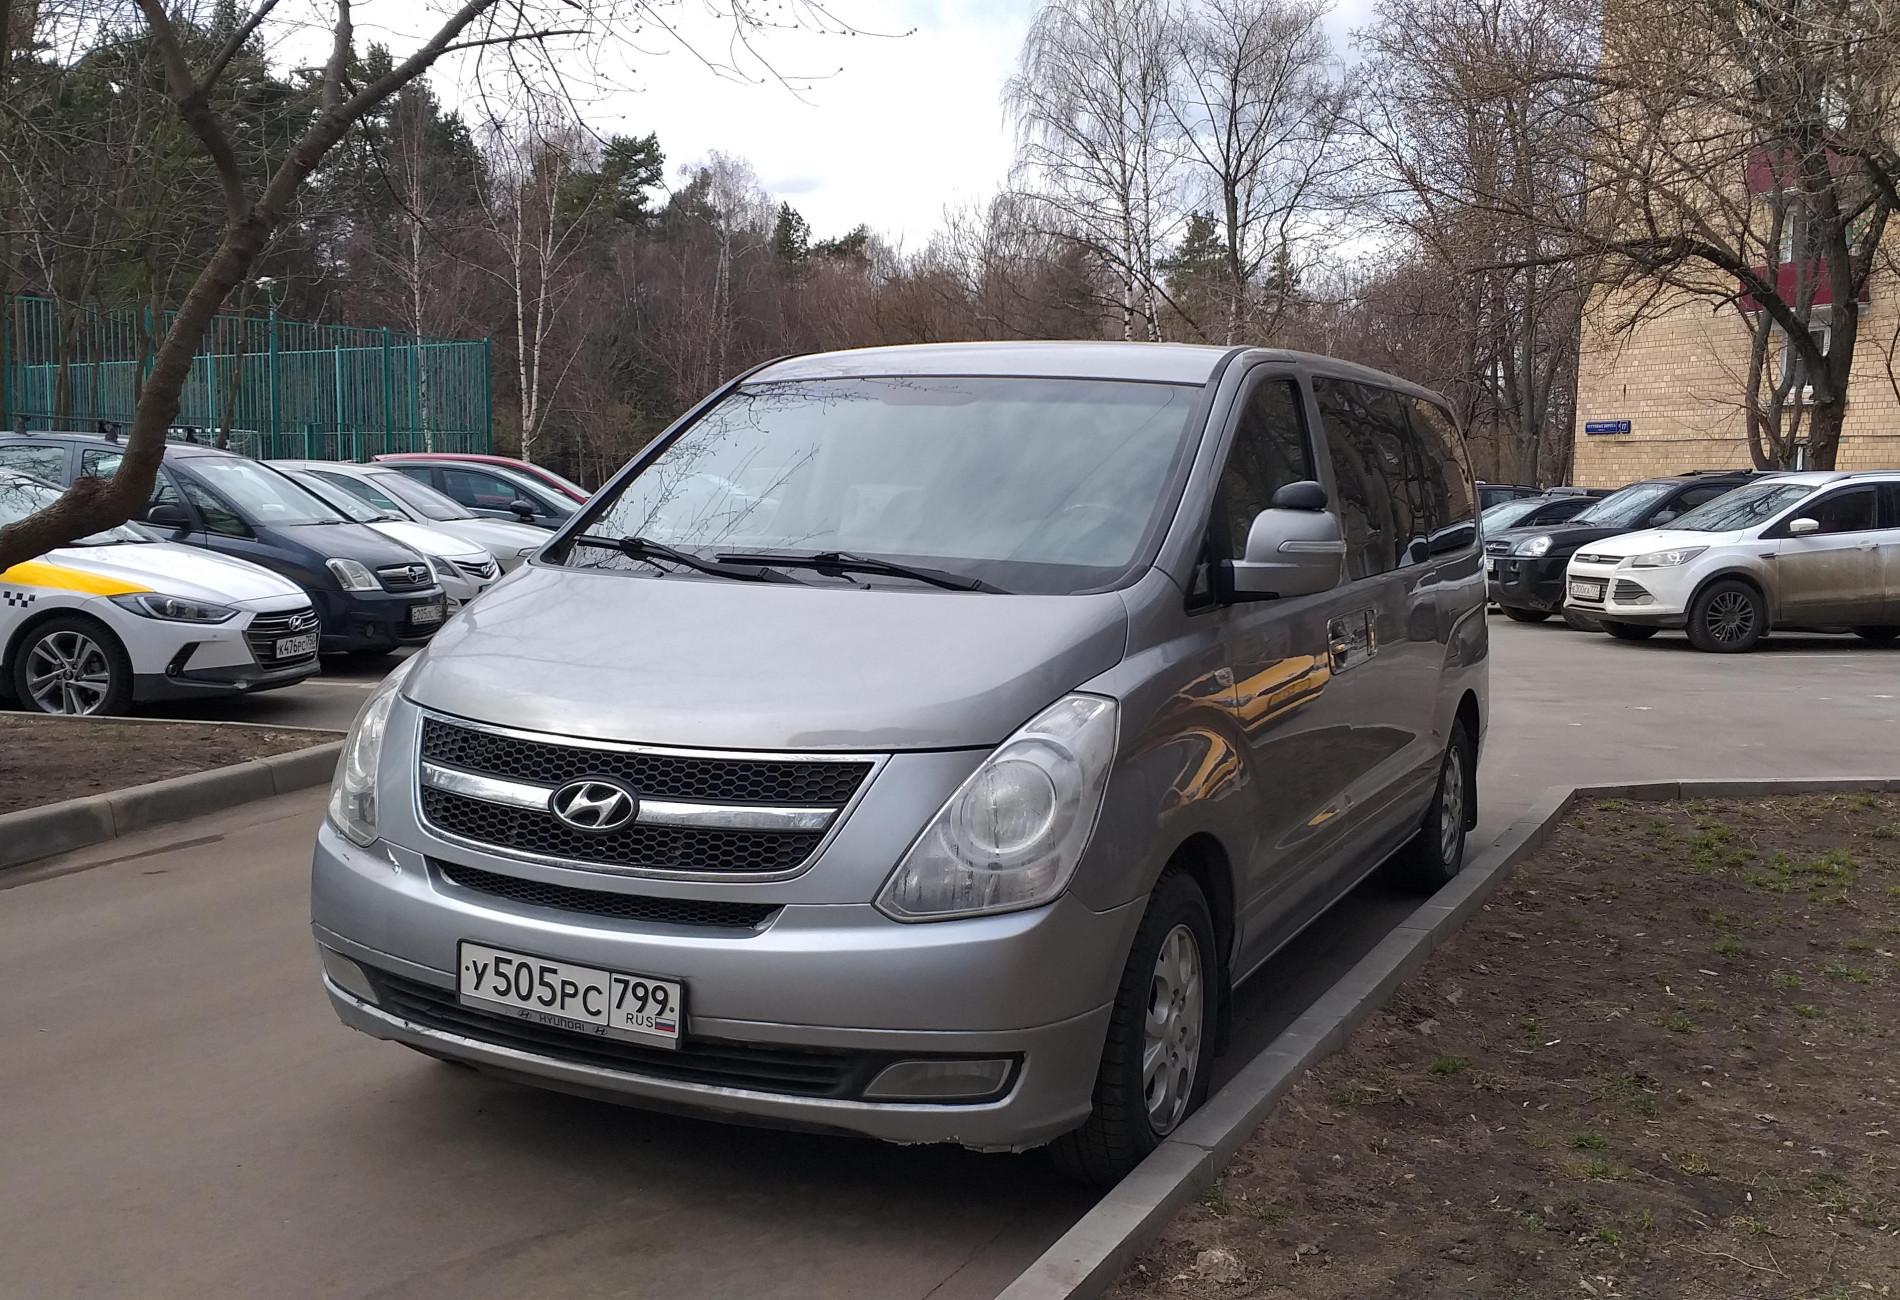 Аренда hyundai h1 2011 года в городе Москва Кузьминки от 4000 руб./сутки, задний привод, двигатель: дизель, ОСАГО (Мультидрайв), без водителя, недорого - RentRide